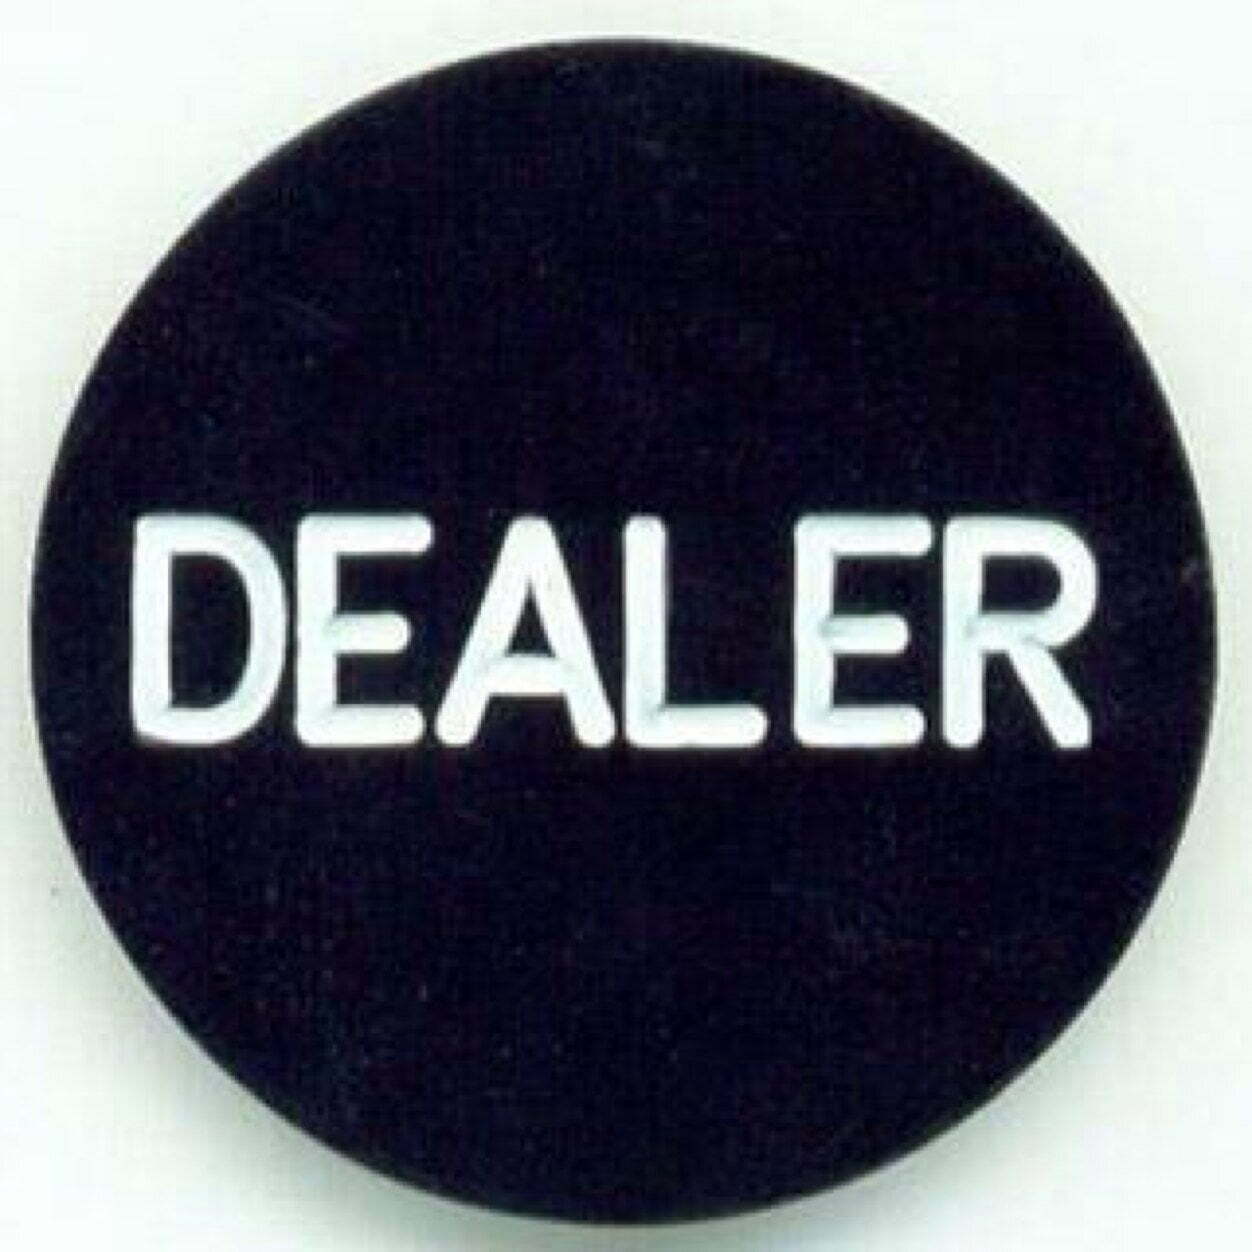  Dealer